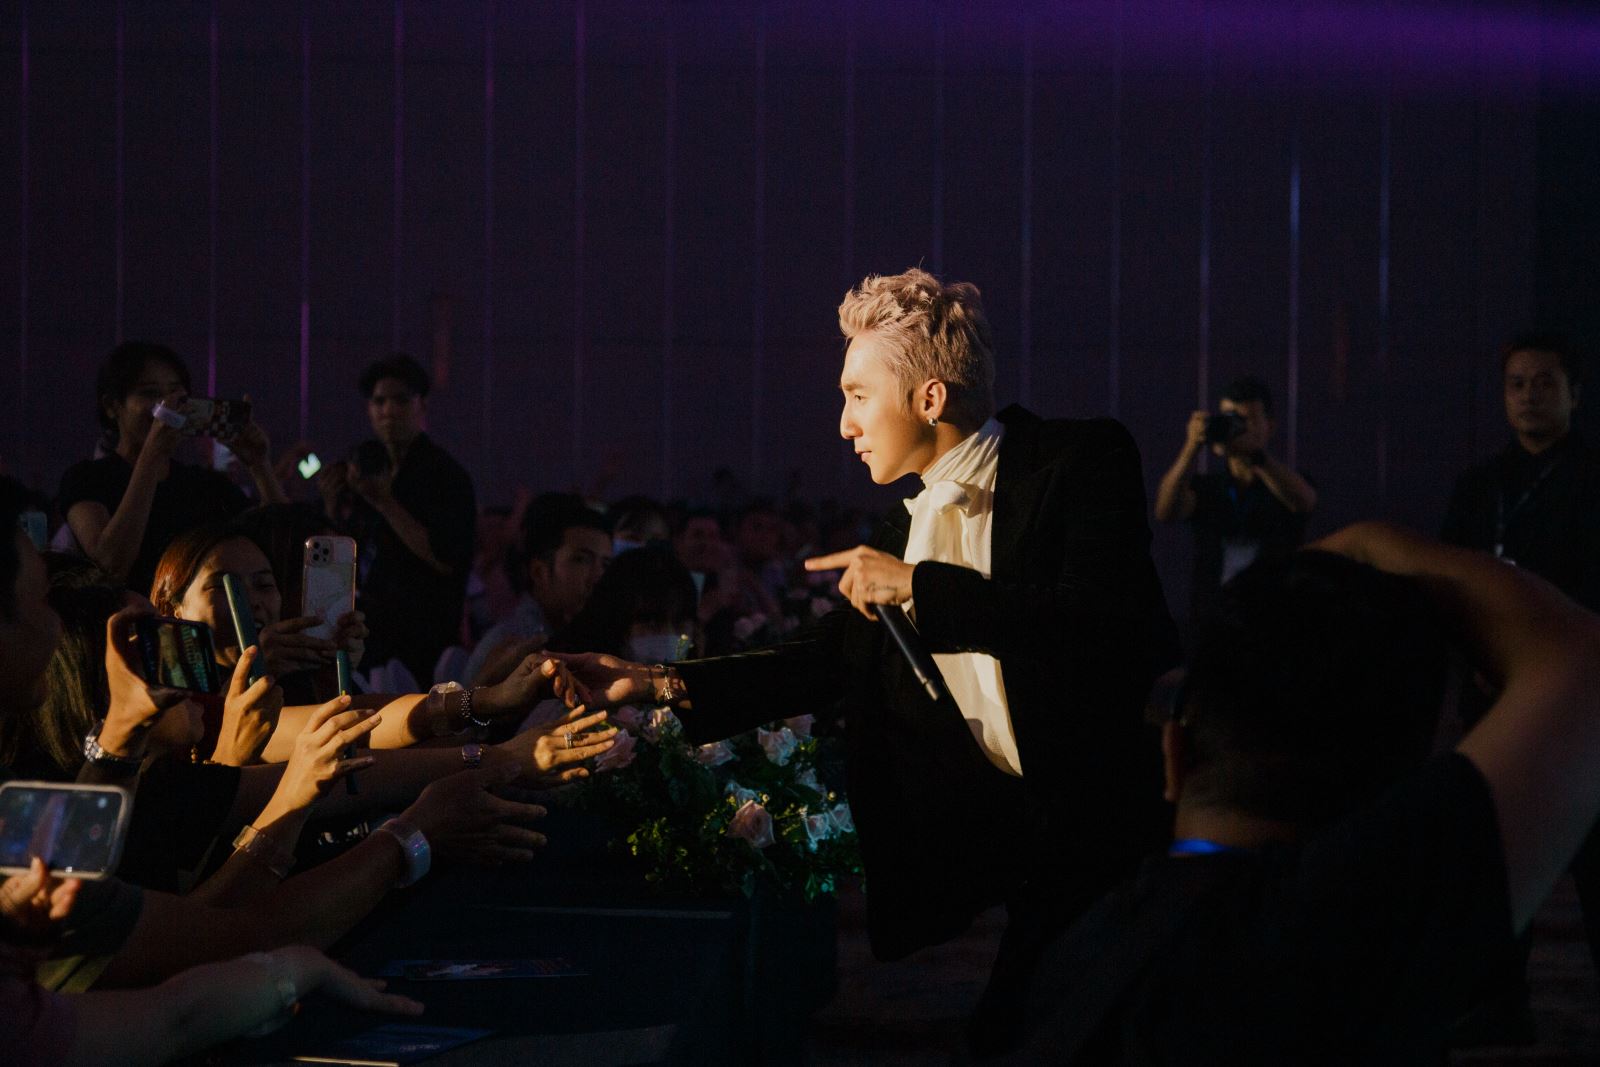 Hồ Ngọc Hà trở lại sân khấu sau khi huỷ loạt show ở Mỹ, Sơn Tùng biểu diễn cực bốc - Ảnh 4.